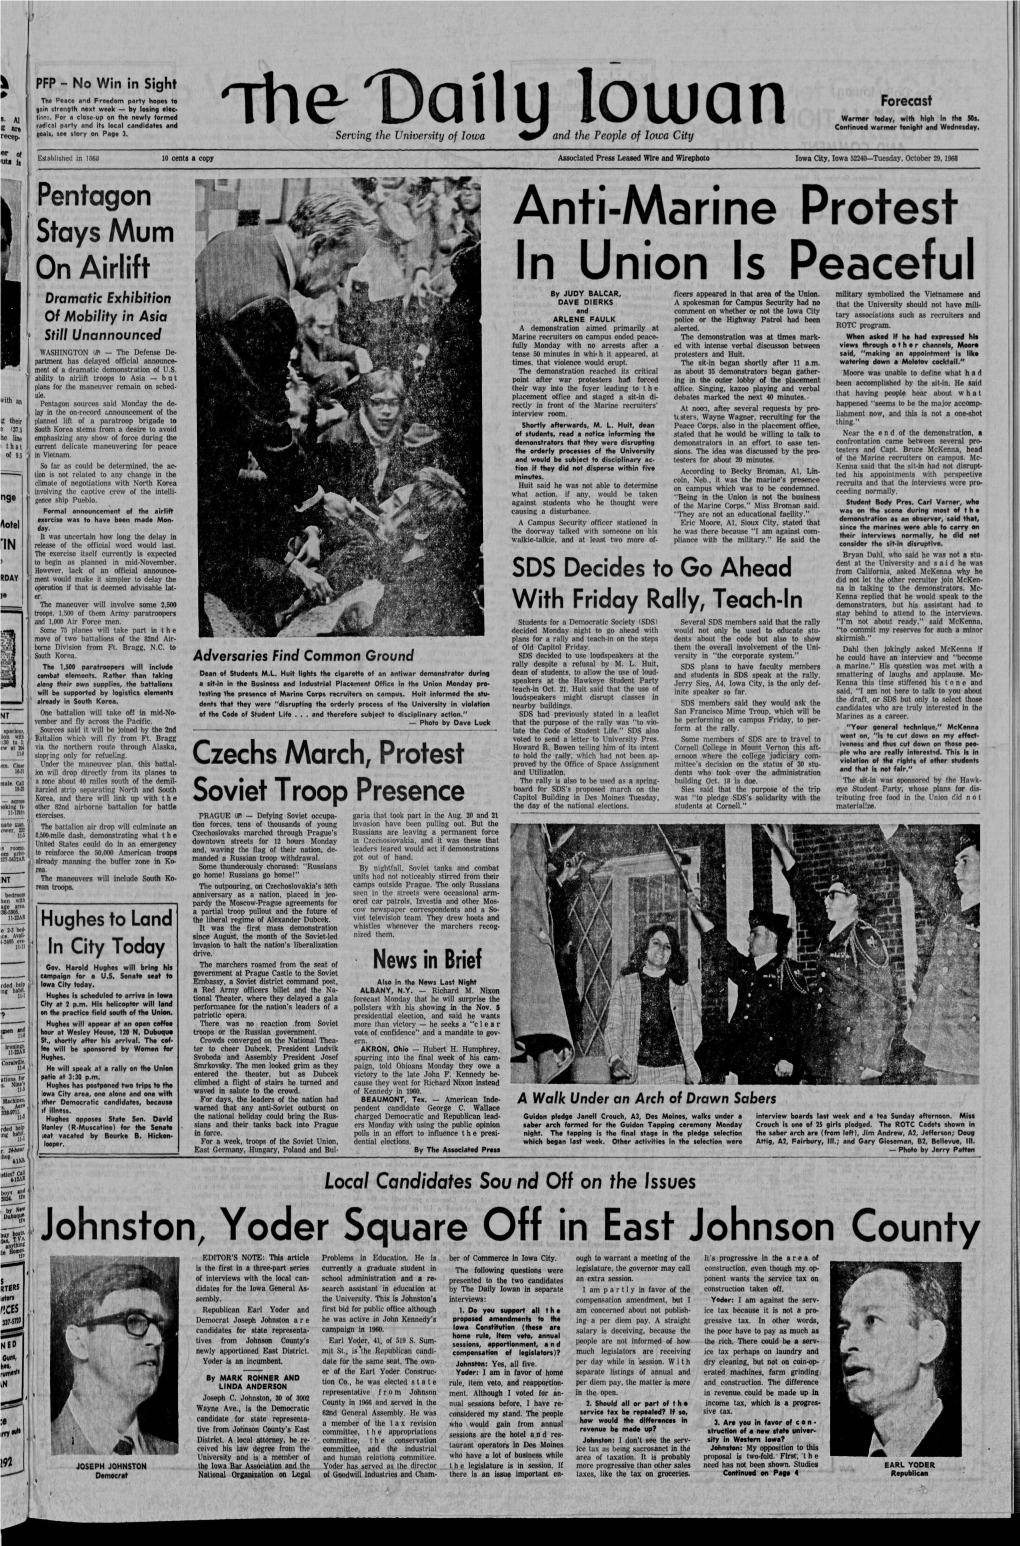 Daily Iowan (Iowa City, Iowa), 1968-10-29